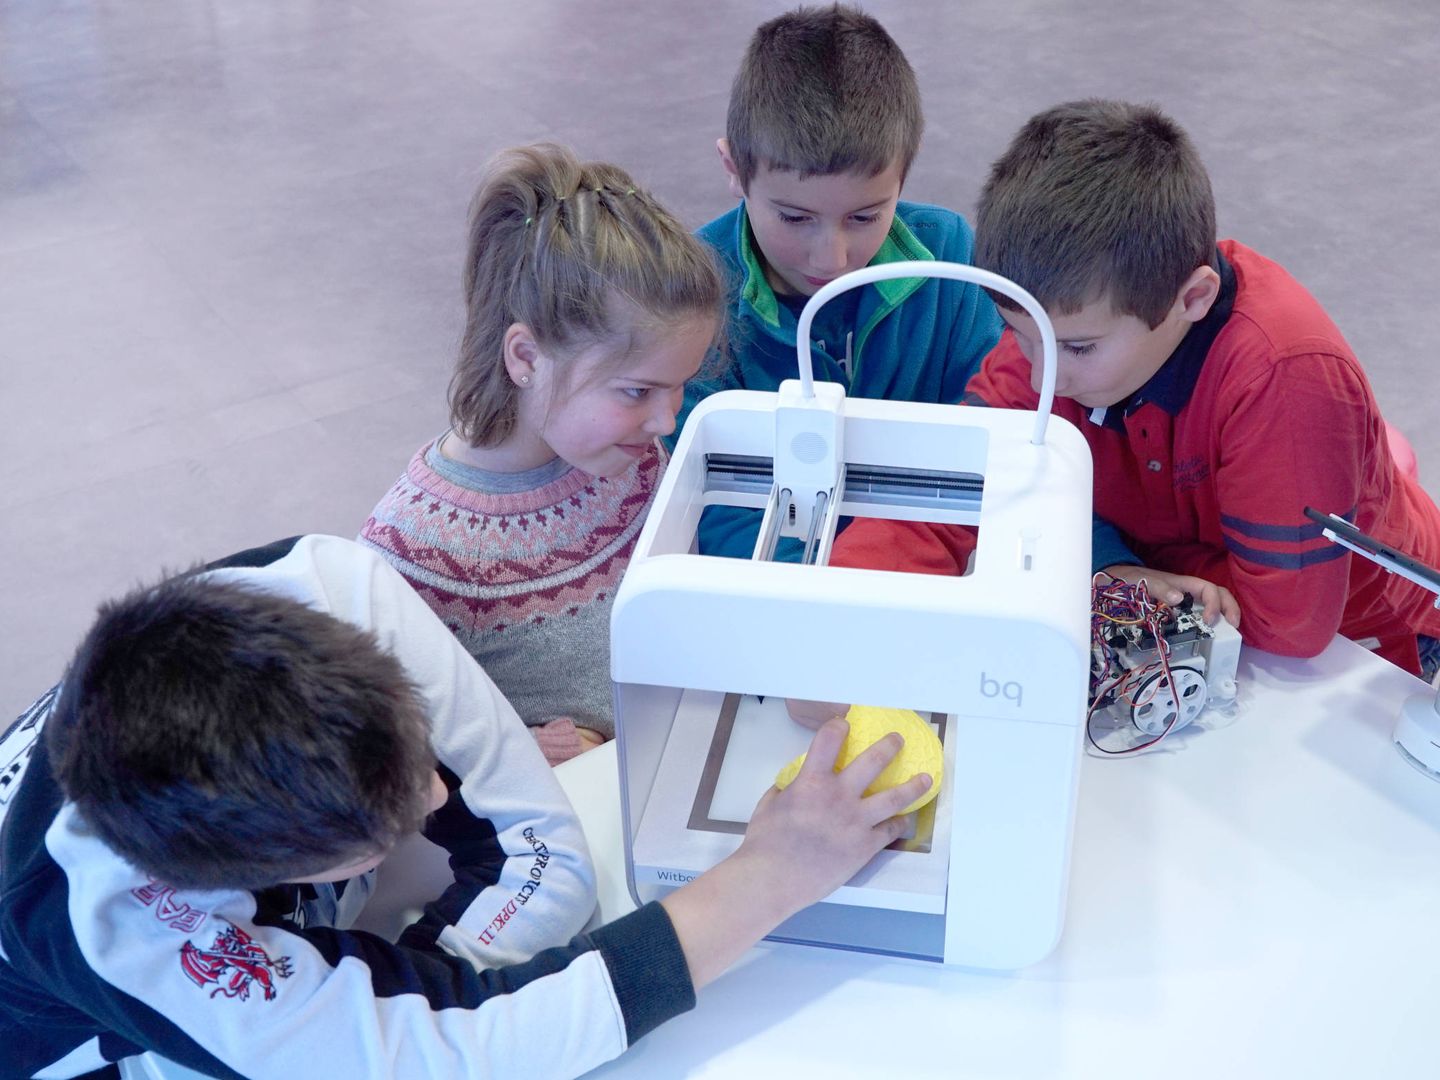 Robótica, impresión 3D o realidad virtual son algunas de las tecnologías con las que aprenden los niños.